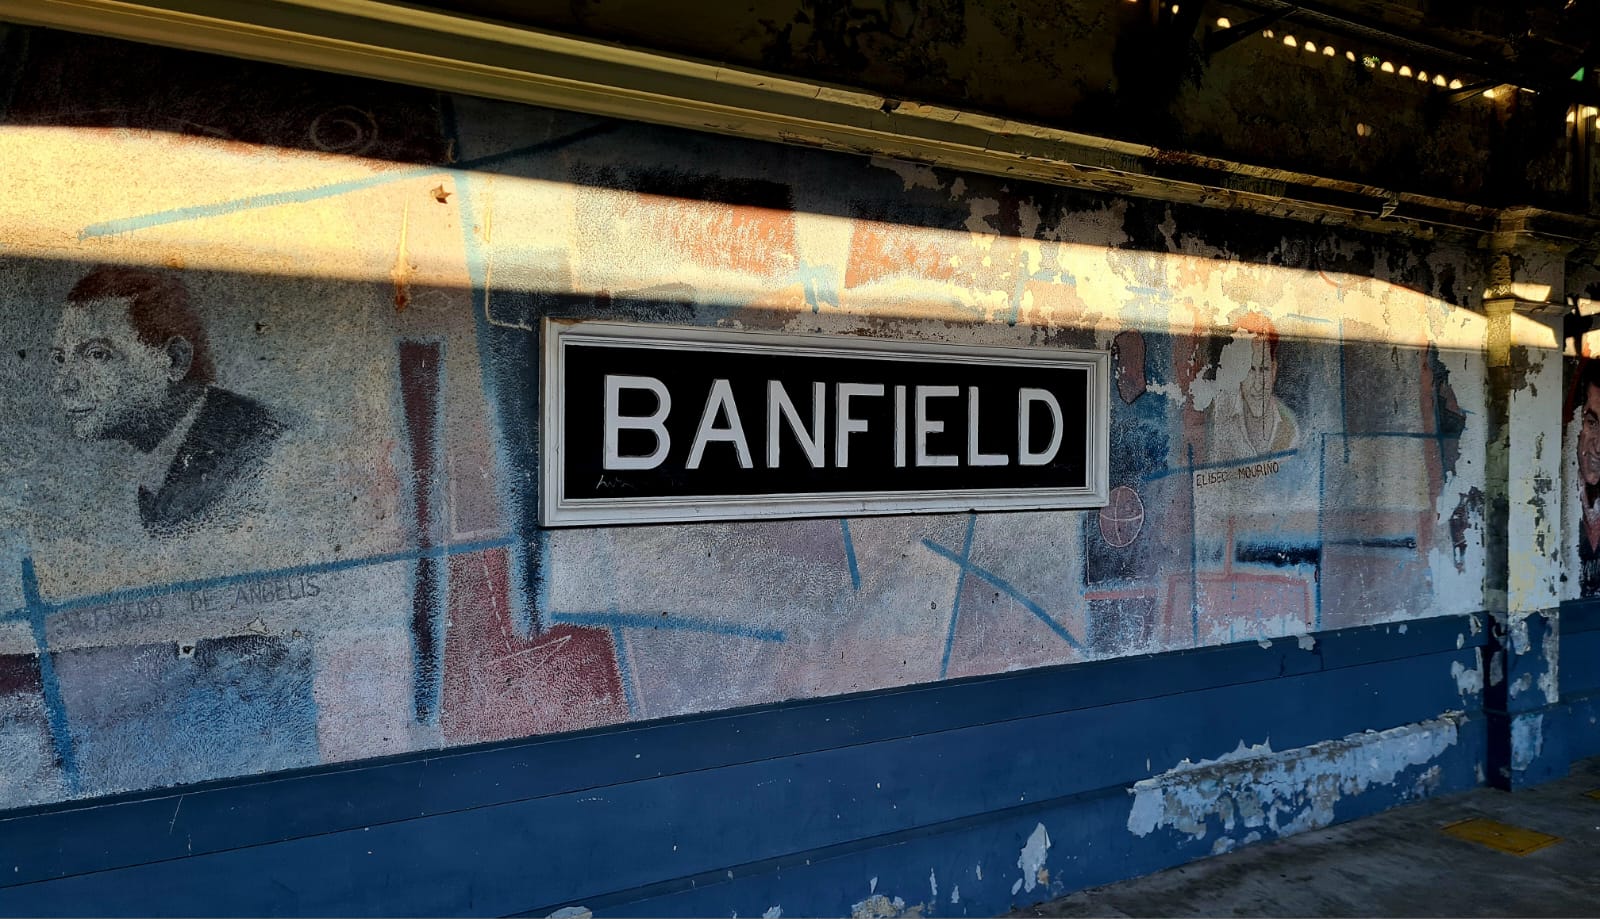 Vivir en Banfield: calles adoquinadas,  casas bajas de estilo inglés y relatos en cada esquina